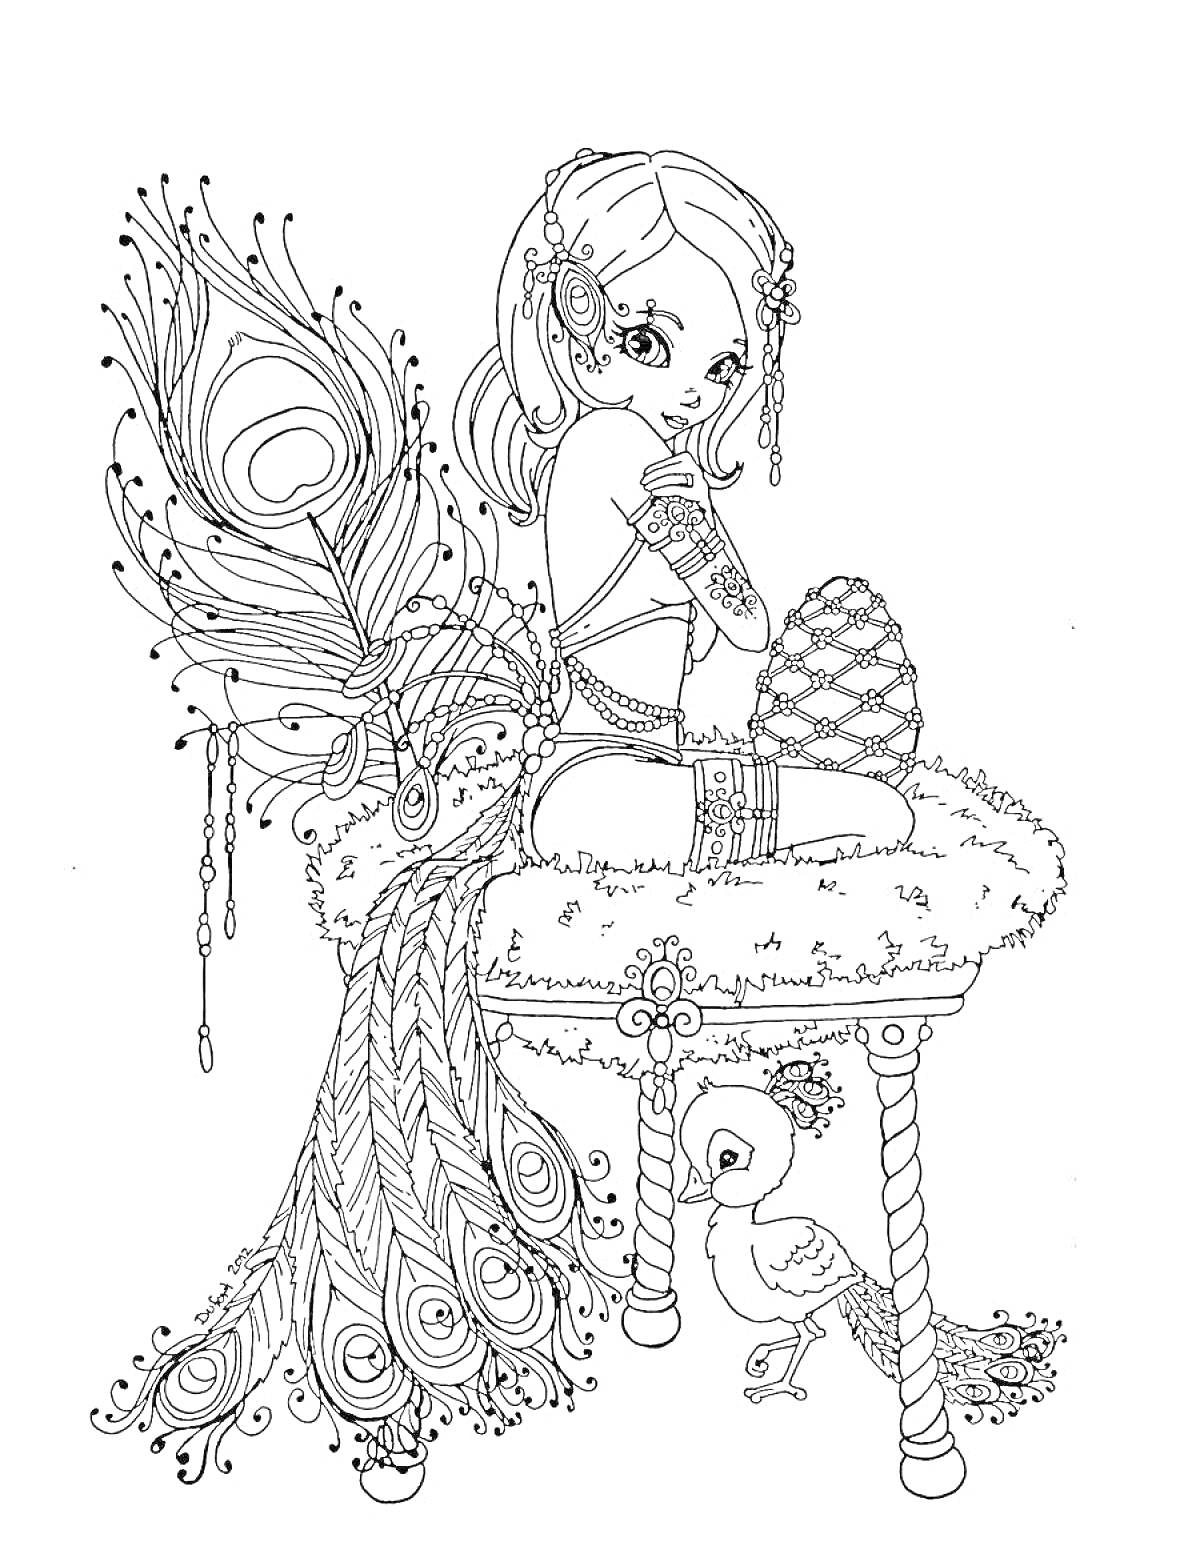 Раскраска Девочка с павлиньим хвостом, сидящая на стуле рядом с птицей